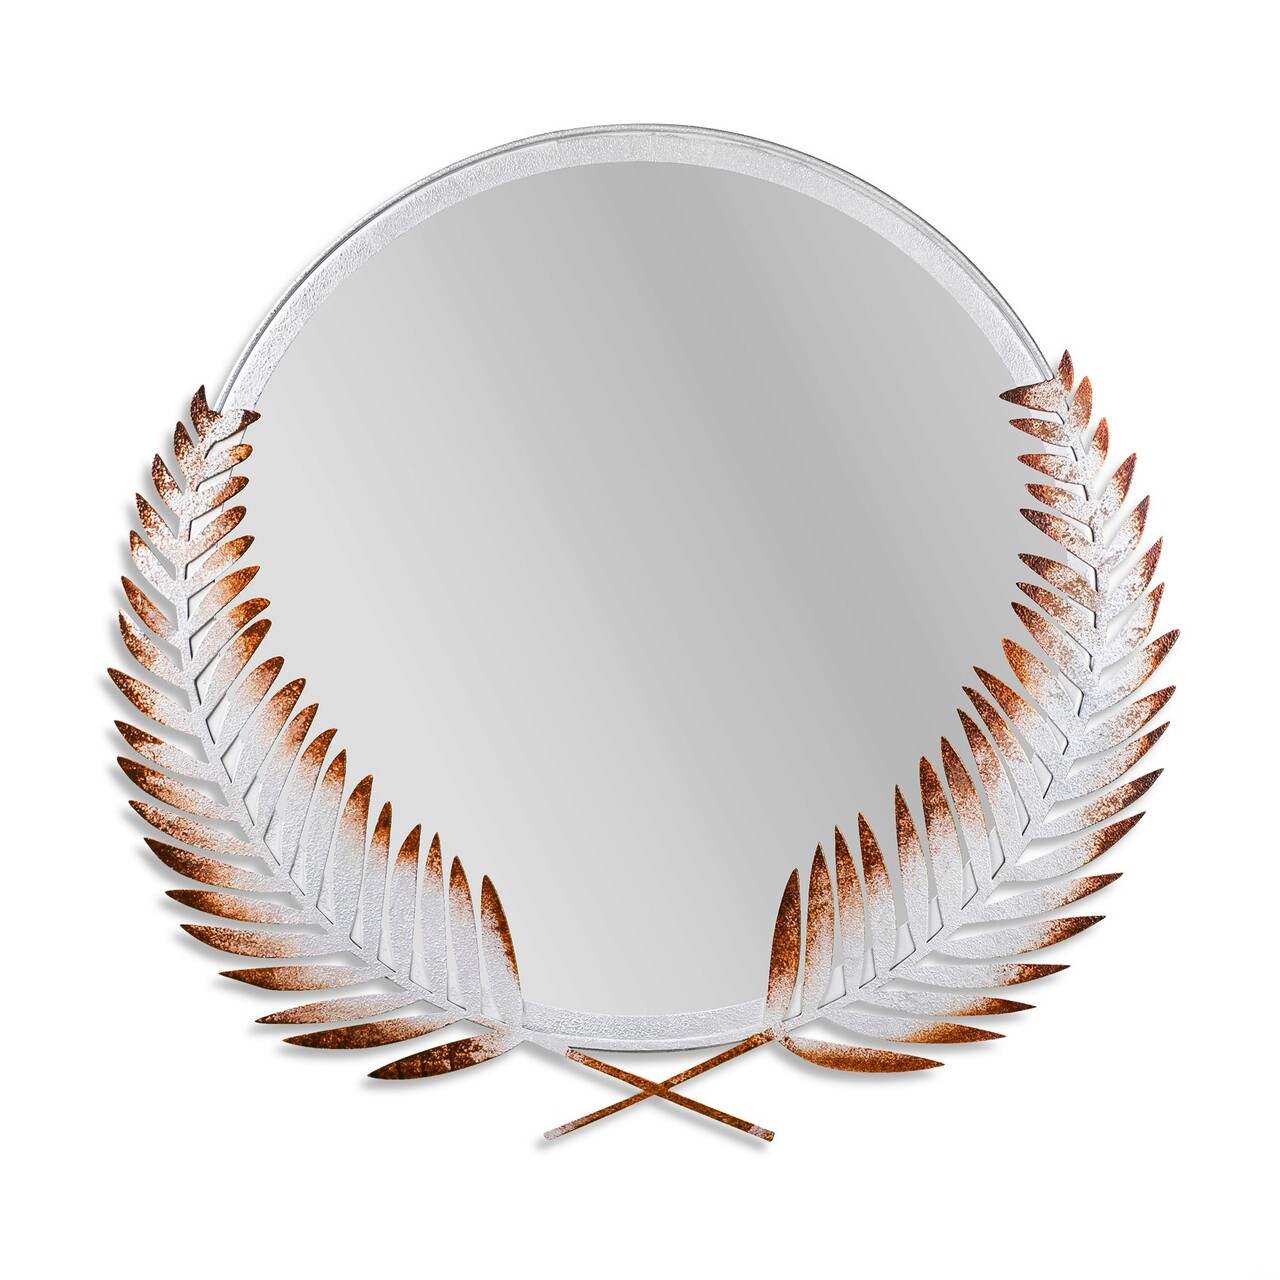 Oglinda Decorativa, Palm Mirror L, Metal, Dimensiune: 59 X 57 Cm, Maro/Alb